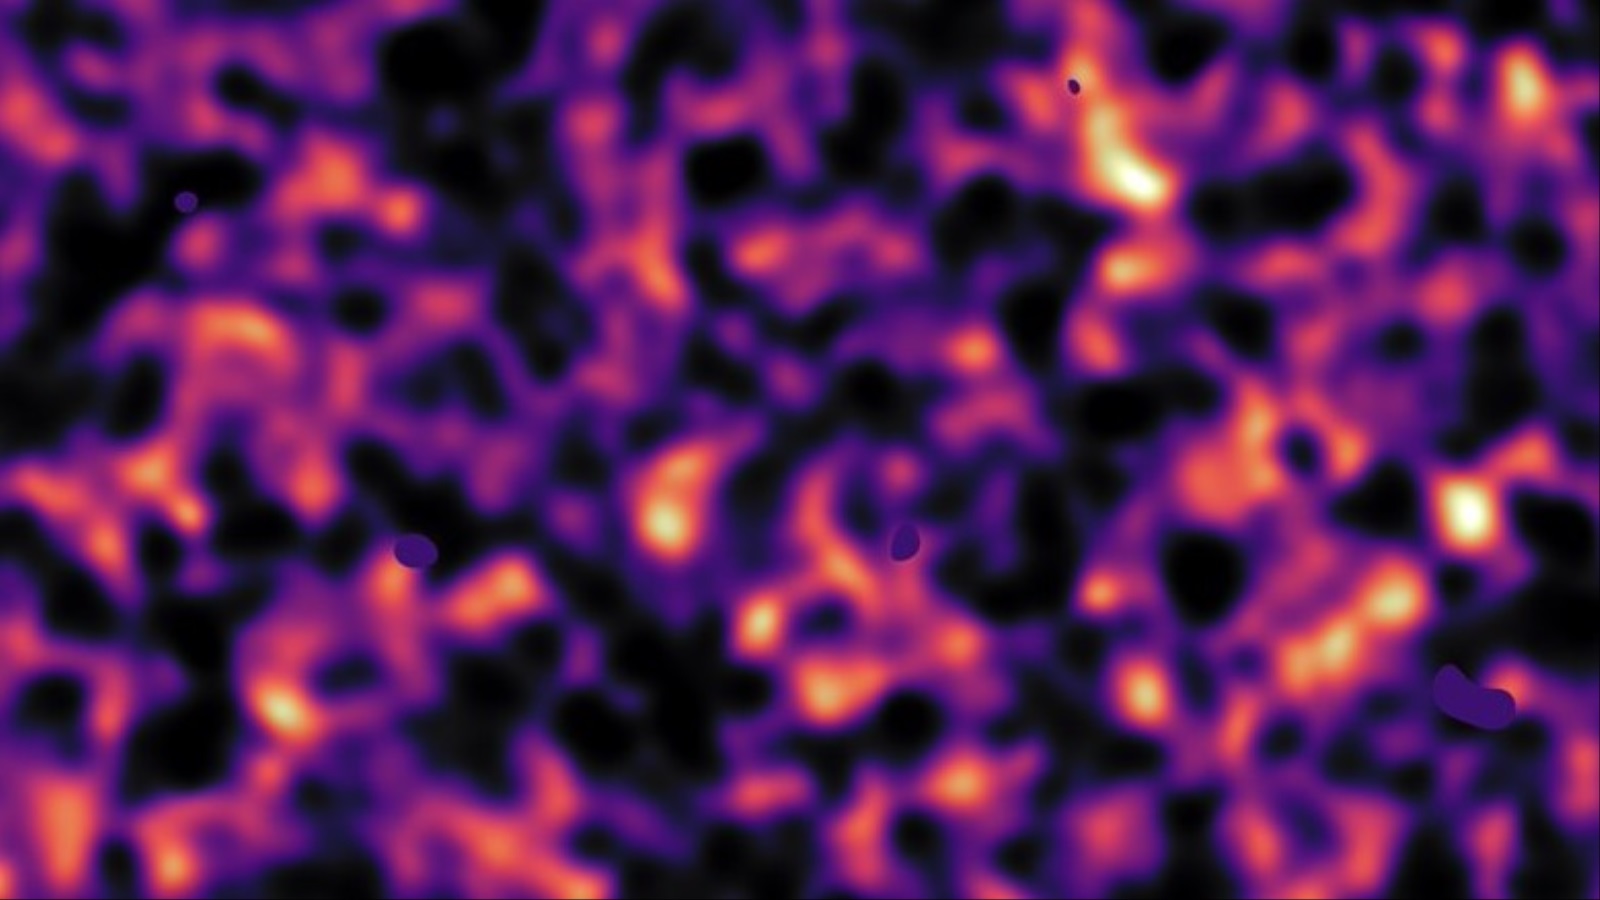 ‪خريطة المادة المظلمة في قطعة من السماء‬ (مواقع إلكترونية)